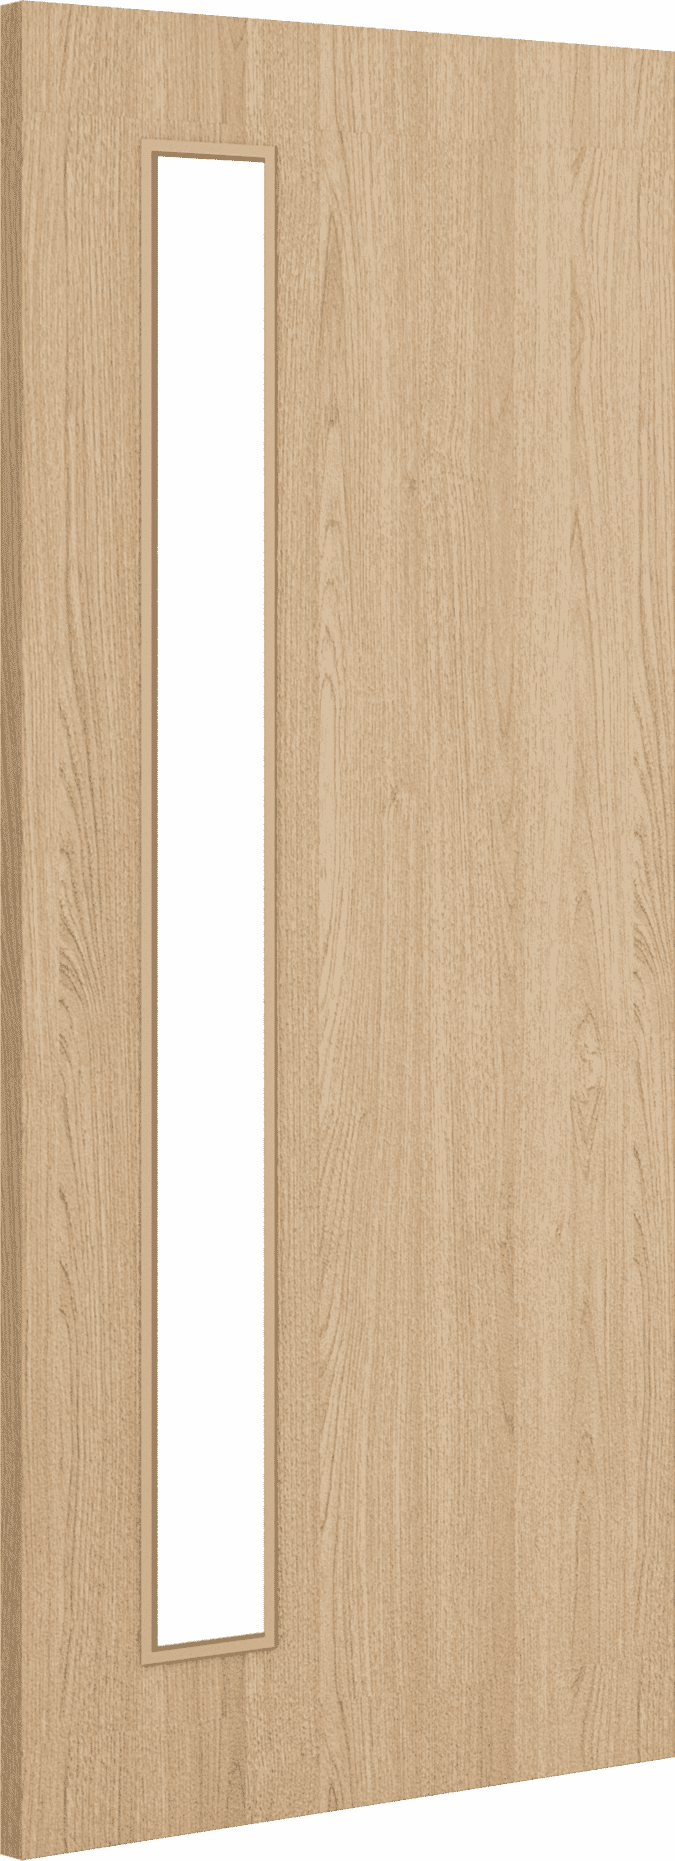 2040mm x 926mm x 54mm Architectural Oak 06 Clear Glazed - Prefinished FD60 Fire Door Blank